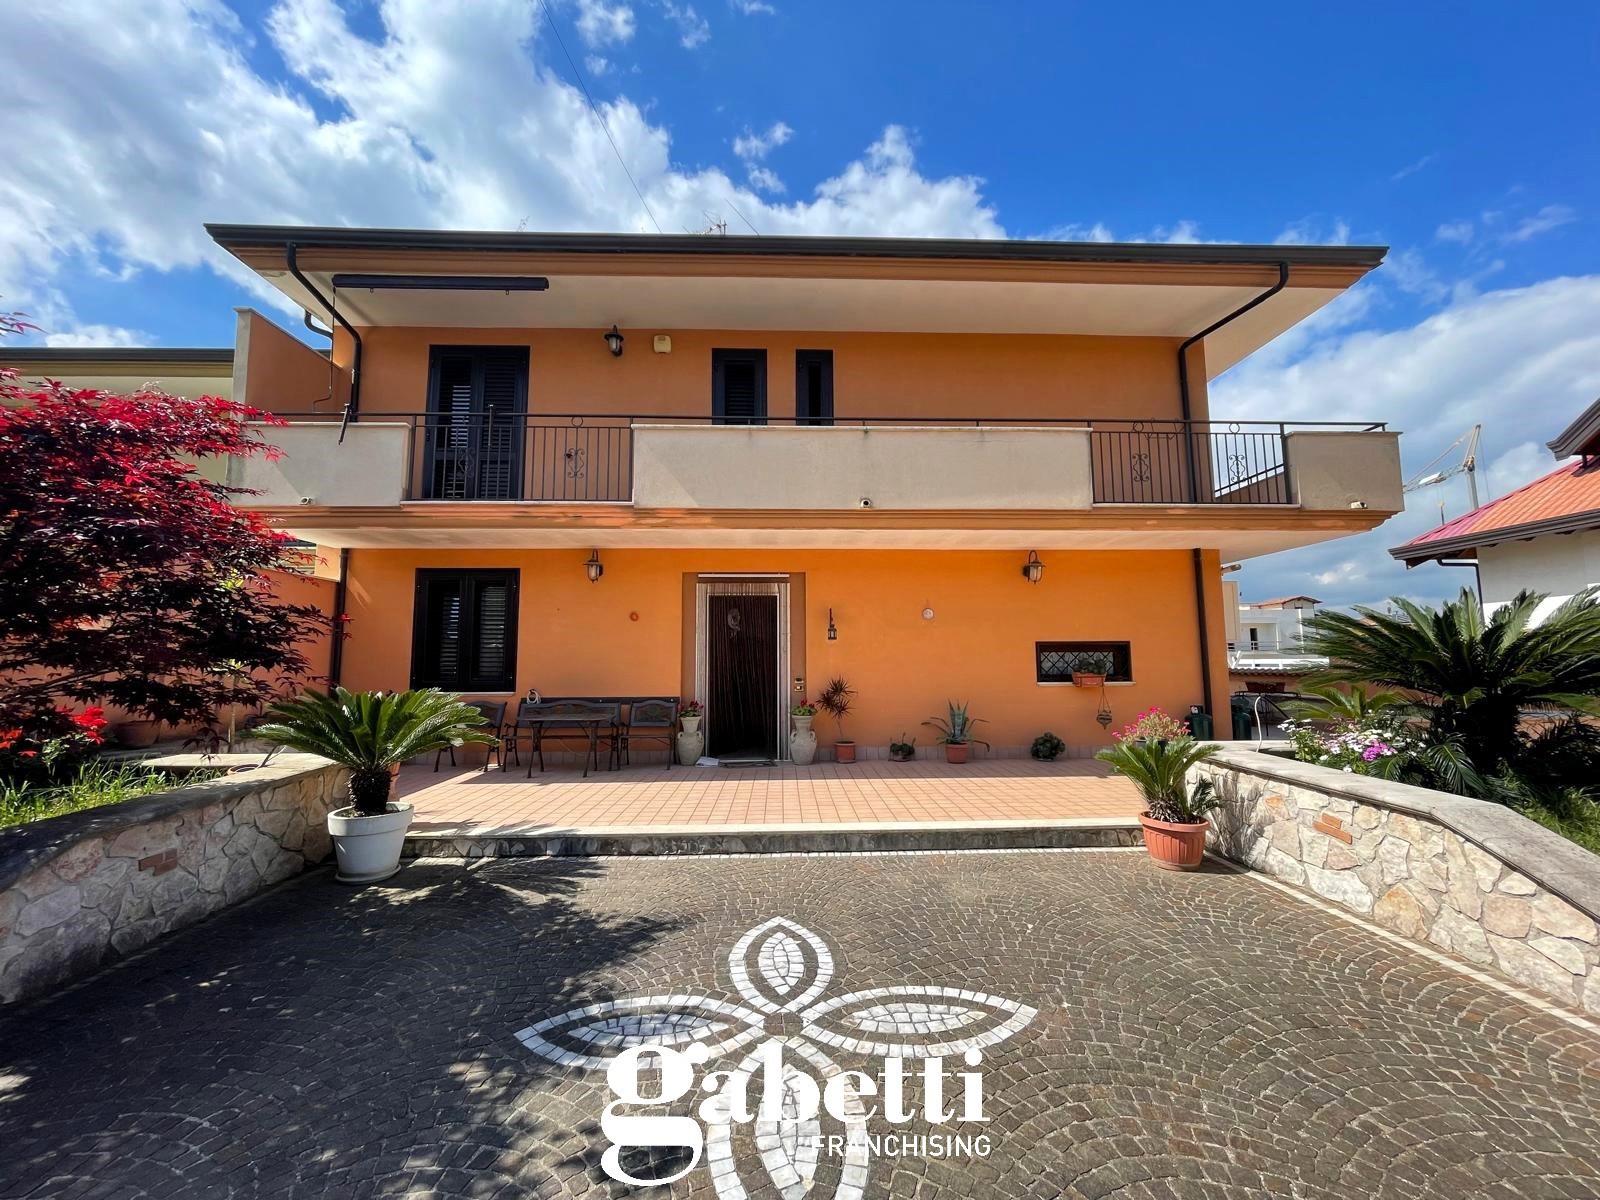 Villa Bifamiliare in vendita a Vitulazio, 7 locali, prezzo € 249.000 | PortaleAgenzieImmobiliari.it